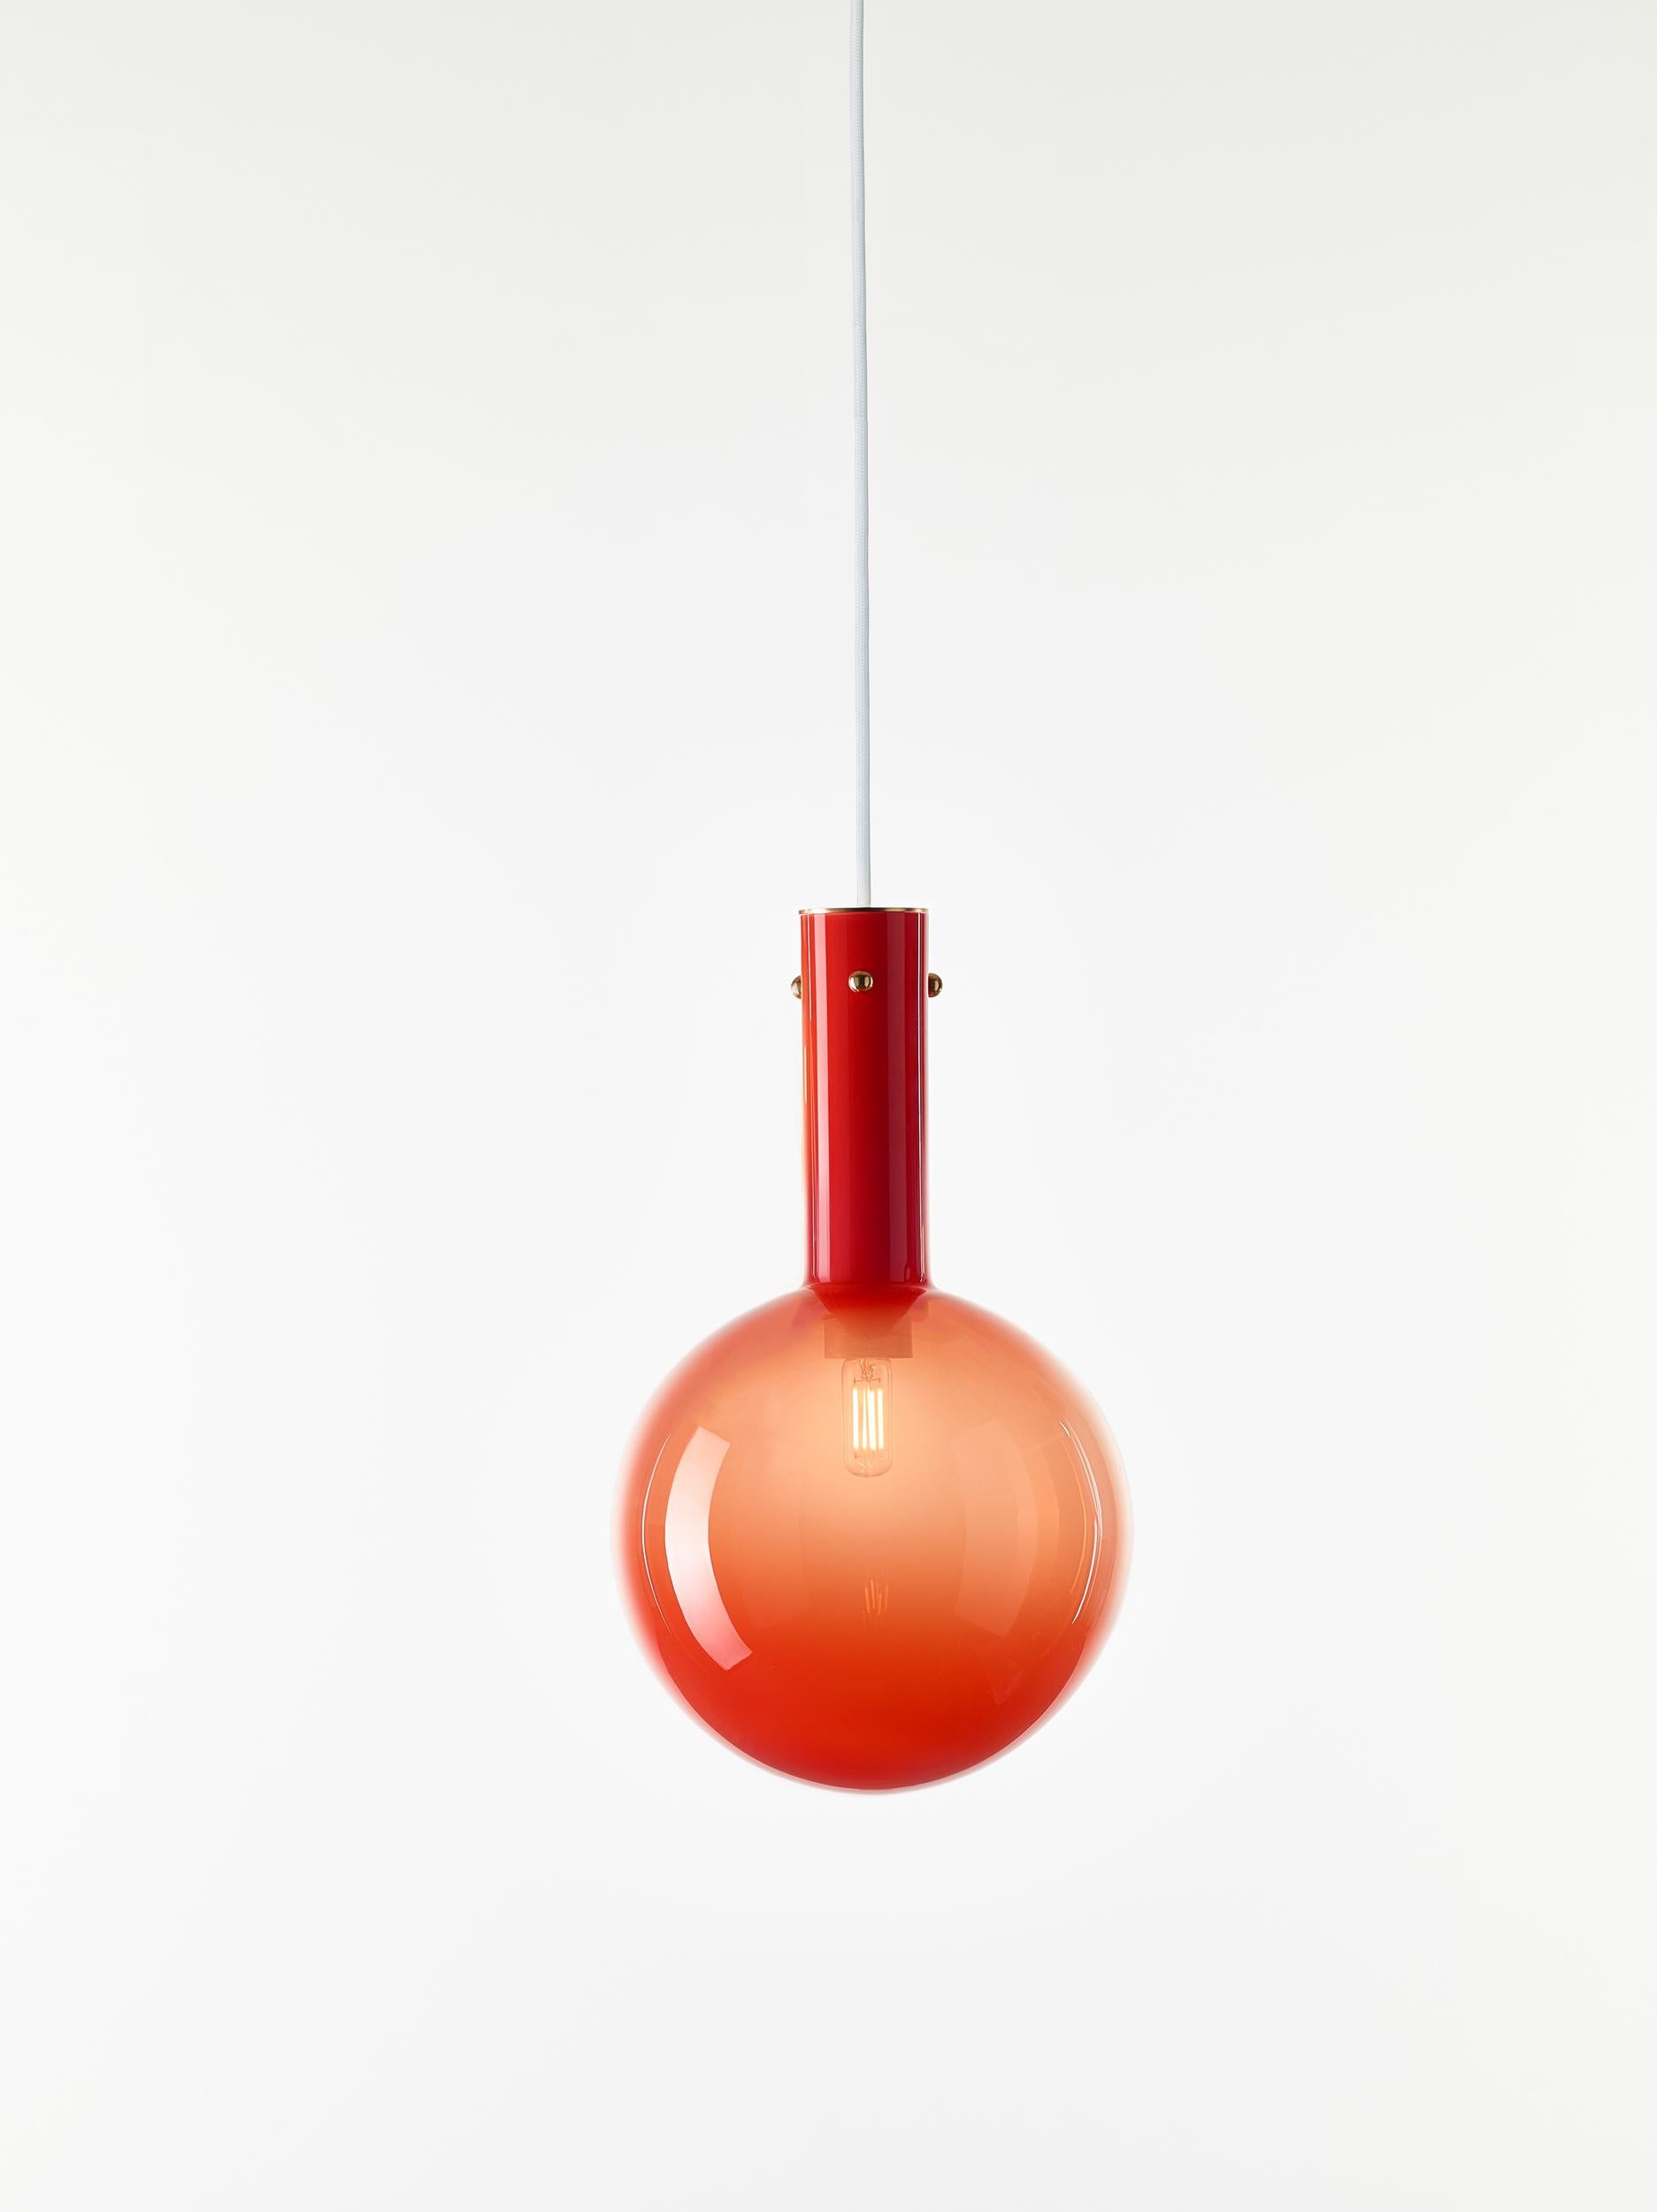 Lot de 2 lampes suspendues rouges Sphaerae par Dechem Studio
Dimensions : D 20 x H 180 cm
Matériaux : laiton, métal, verre.
Également disponible : différentes finitions et couleurs.

Une seule pièce homogène de verre soufflé à la main crée le corps